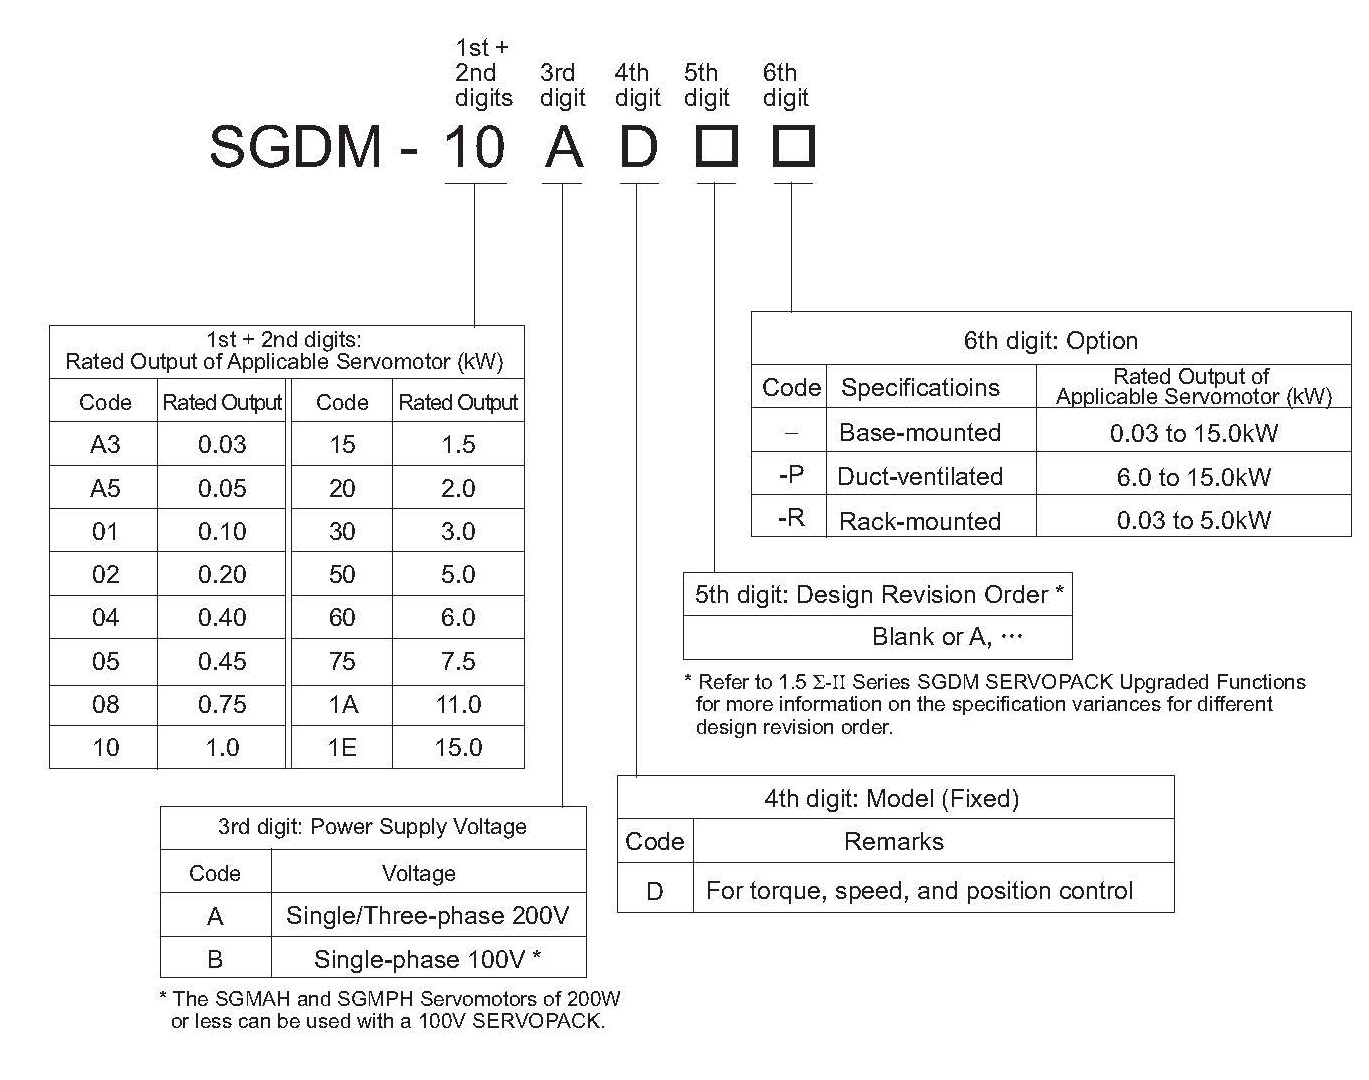 SGDM-20AD spec